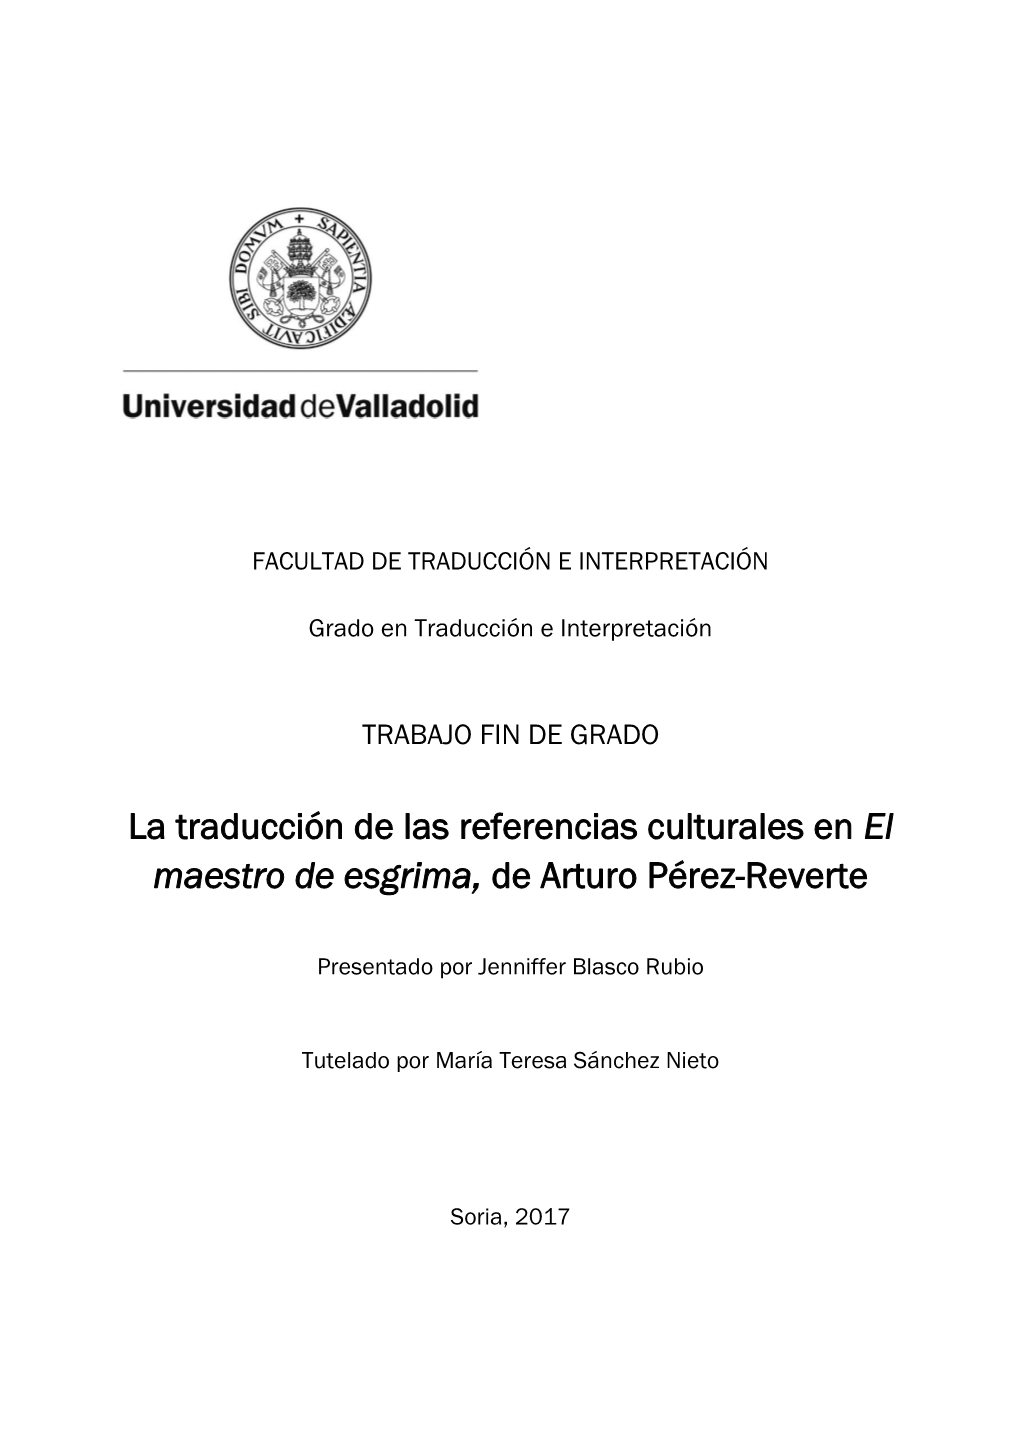 La Traducción De Las Referencias Culturales En El Maestro De Esgrima, De Arturo Pérez-Reverte